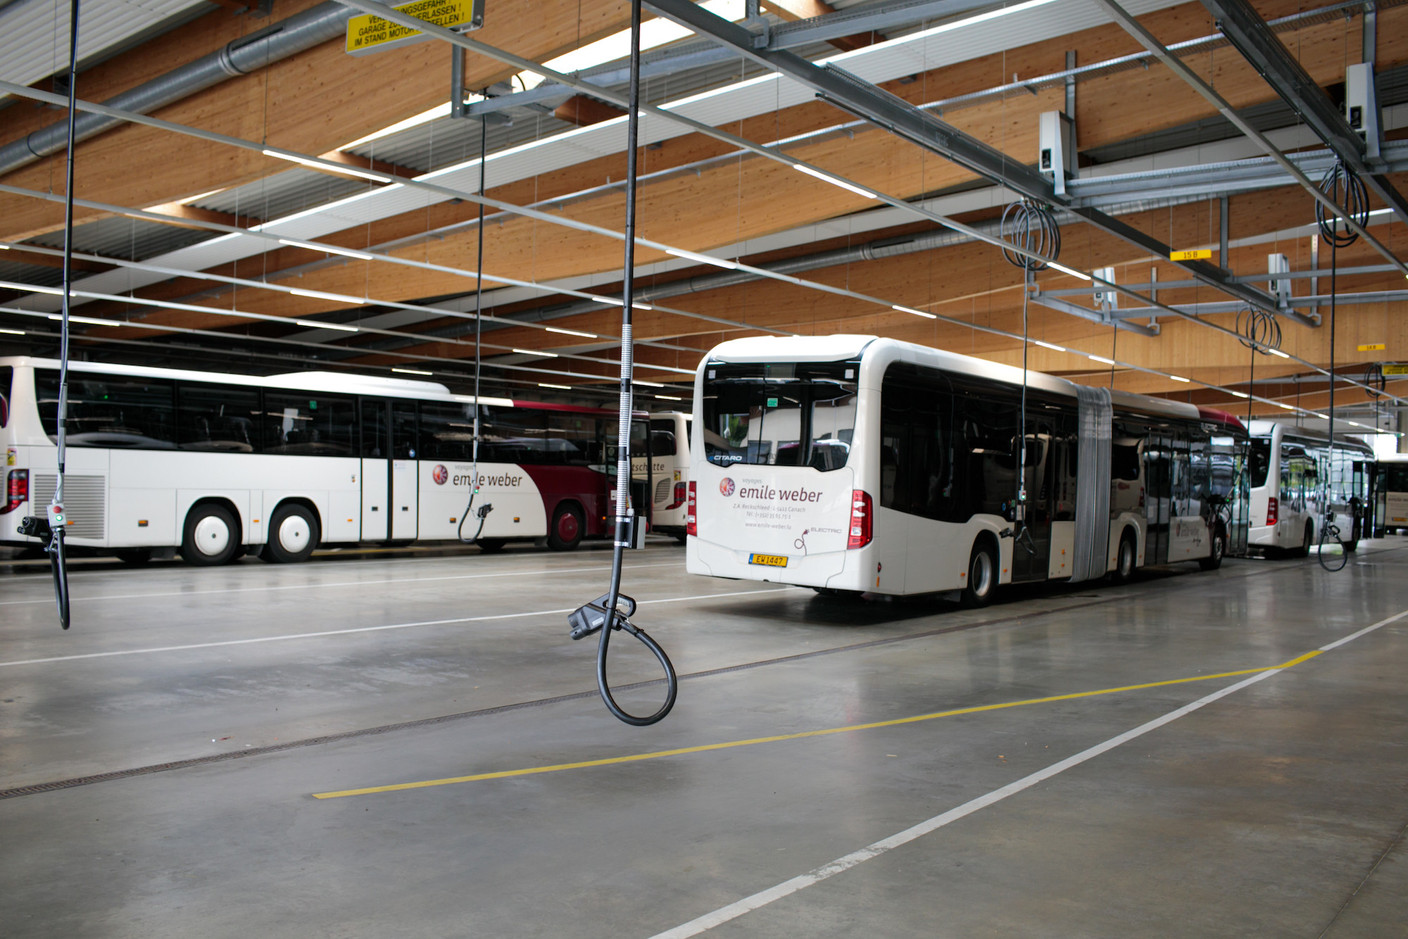 Au plafond, des rails métalliques et un système qui permet d’approcher la prise de tous les endroits où les bus peuvent se brancher. Chaque marque a sa préférence. (Photo: Matic Zorman/Maison Moderne)